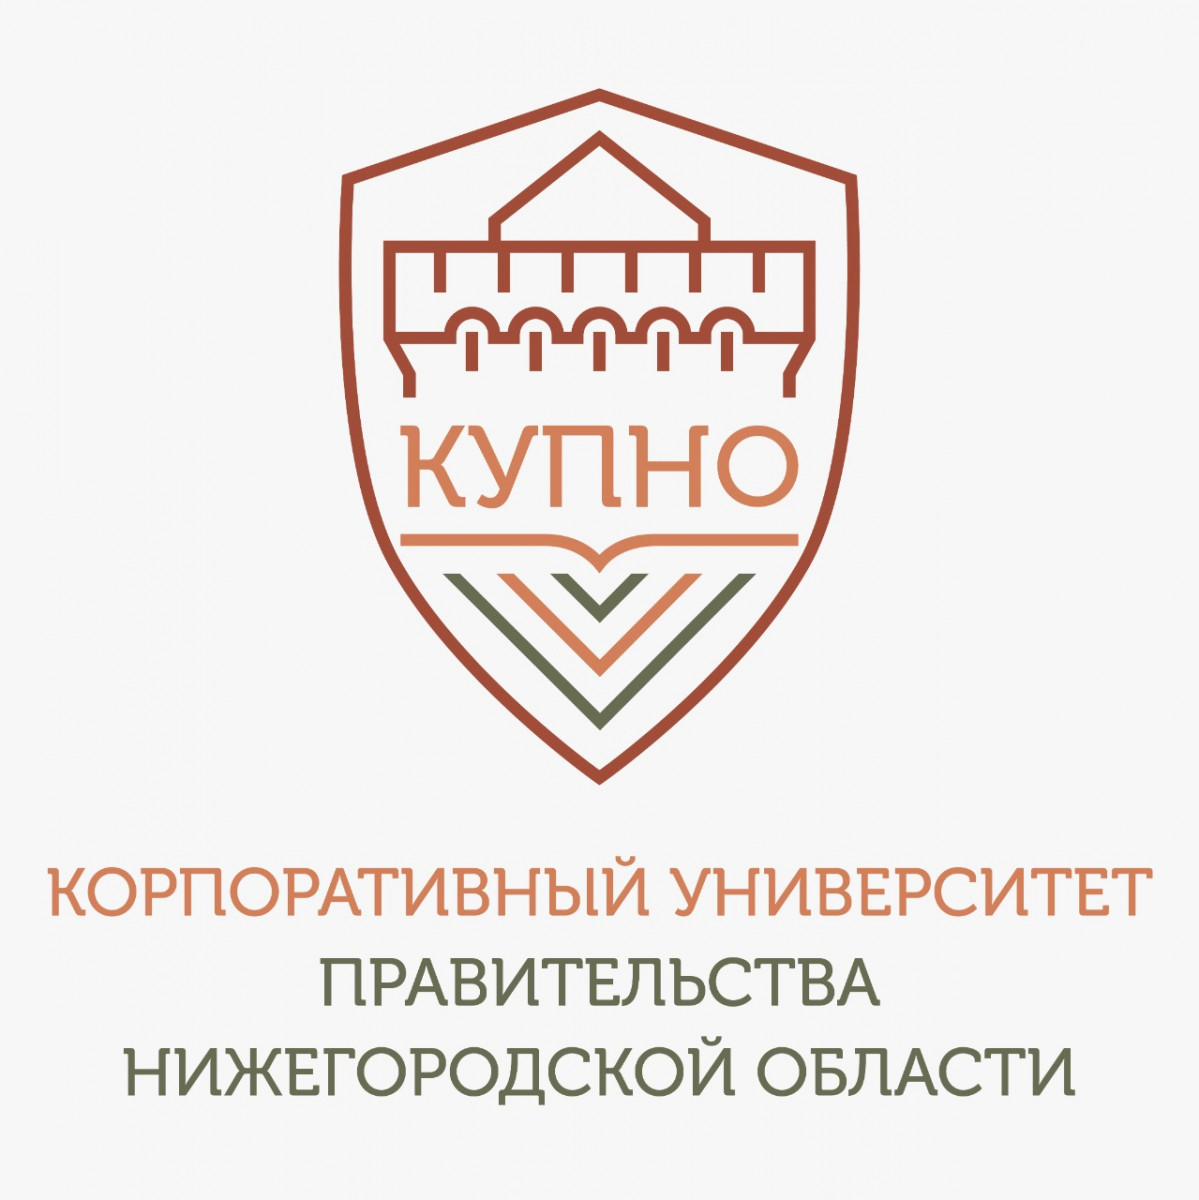 Центр компетенций для студентов откроется в Нижегородской области